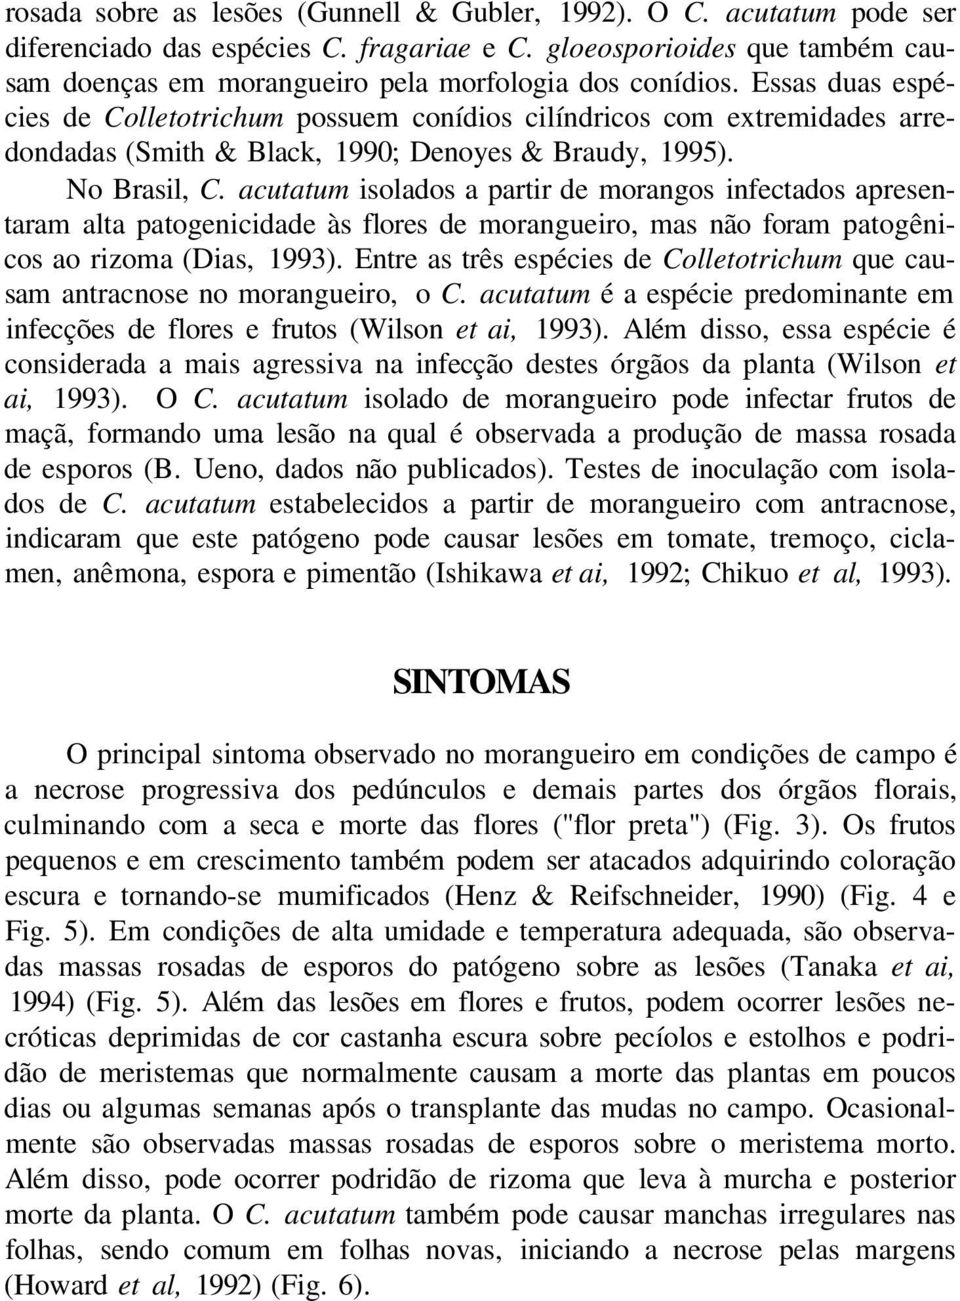 Essas duas espécies de Colletotrichum possuem conídios cilíndricos com extremidades arredondadas (Smith & Black, 1990; Denoyes & Braudy, 1995). No Brasil, C.